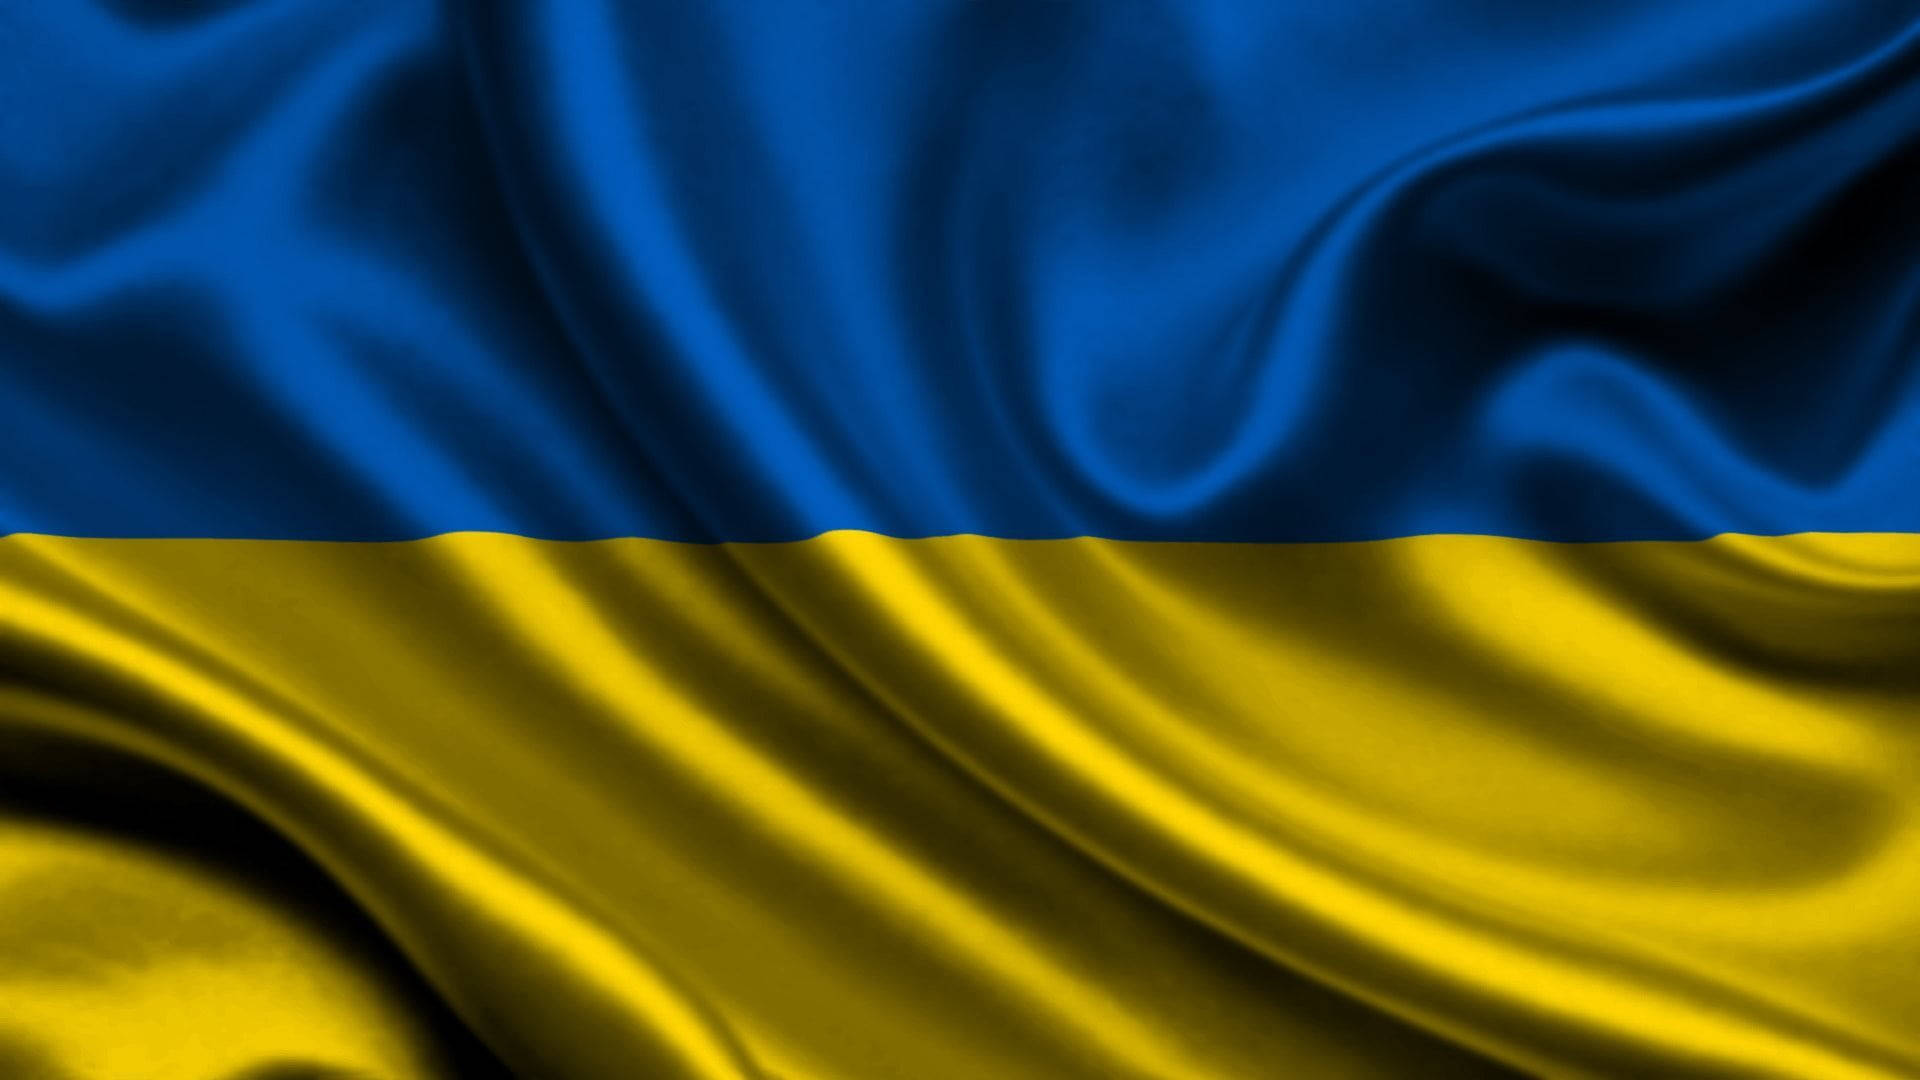 Tải xuống miễn phí hình nền lá cờ Ukraina và hình nền nền tuyệt đẹp! Làm mới màn hình của mình với cảm giác tự hào và trung thành với đất nước Ukraina. Hình nền này sẽ mang đến cho bạn cảm giác đặc biệt và gợi nhắc kỷ niệm đáng nhớ.